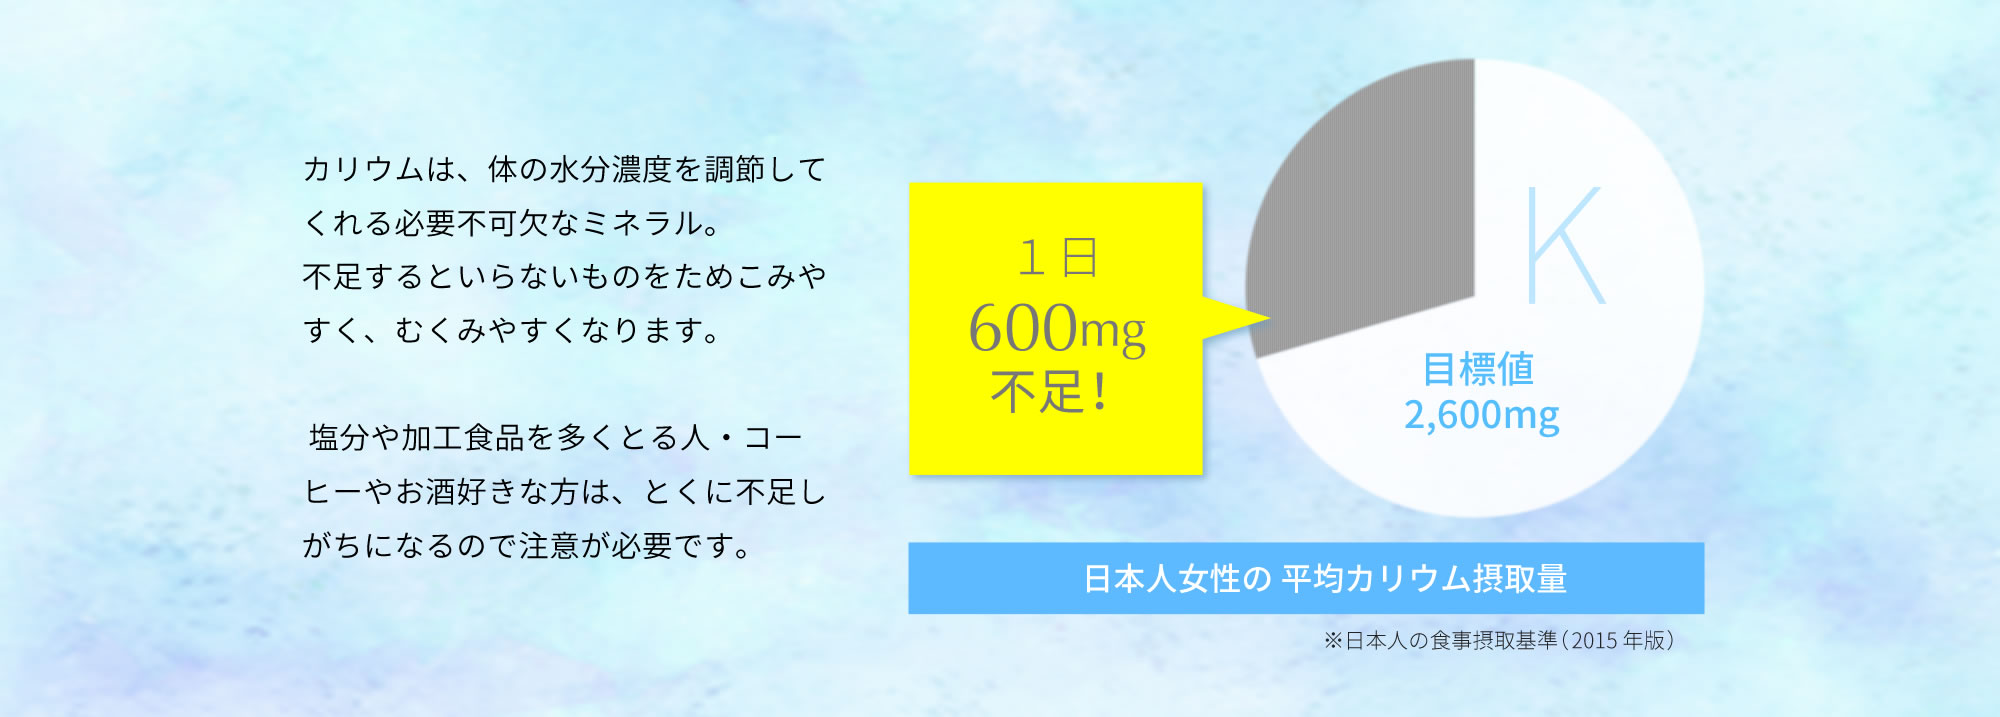 日本人女性の平均カリウム摂取量は目標値 2,600mgに対して１日600mg不足！